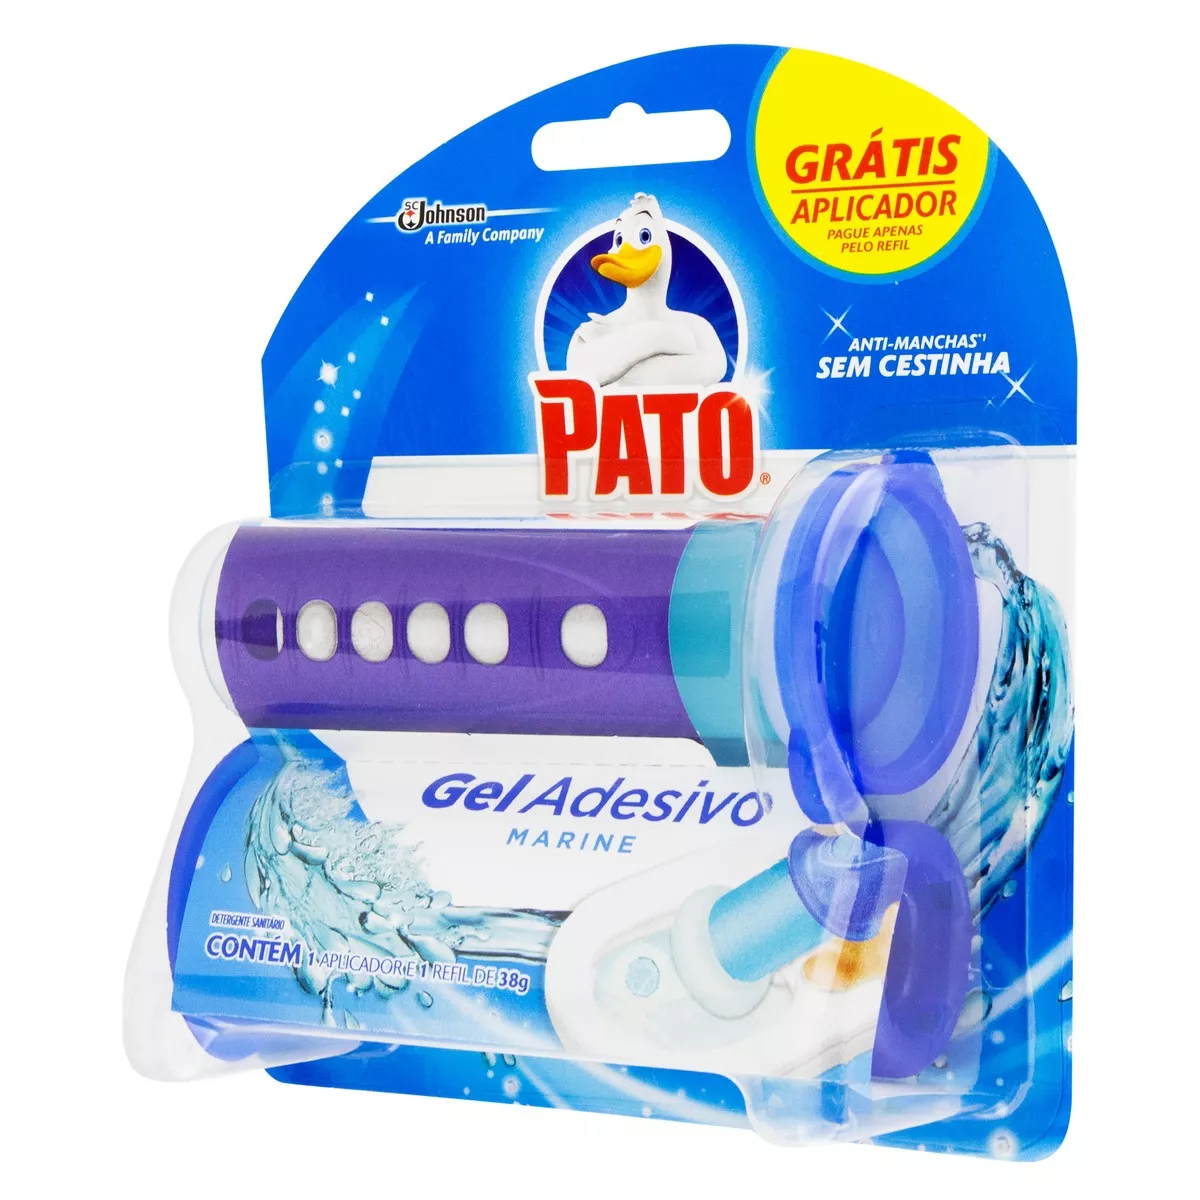 Detergente Sanitário Gel Adesivo Marine Pato 38g Grátis Aplicador